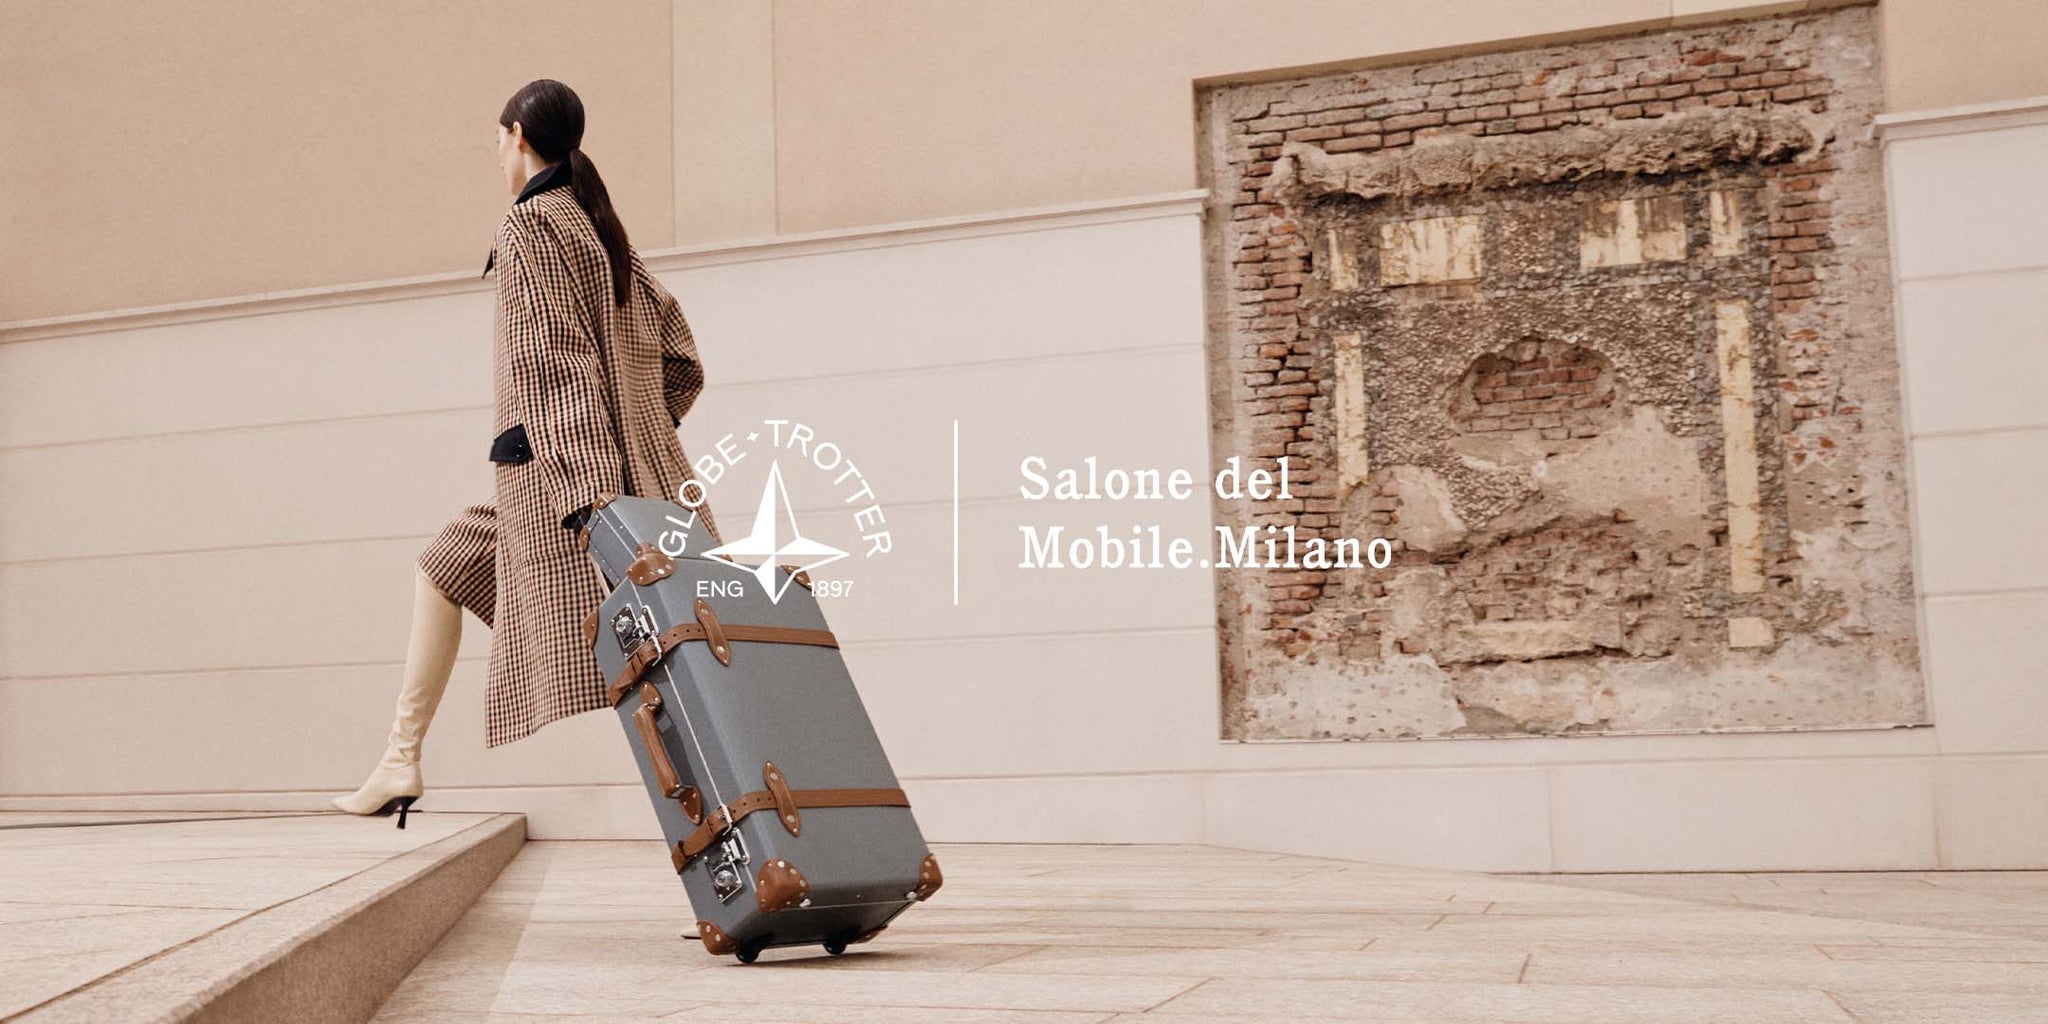 Salone del Mobile.Milano: A Case of Excellent Design - GLOBE-TROTTER